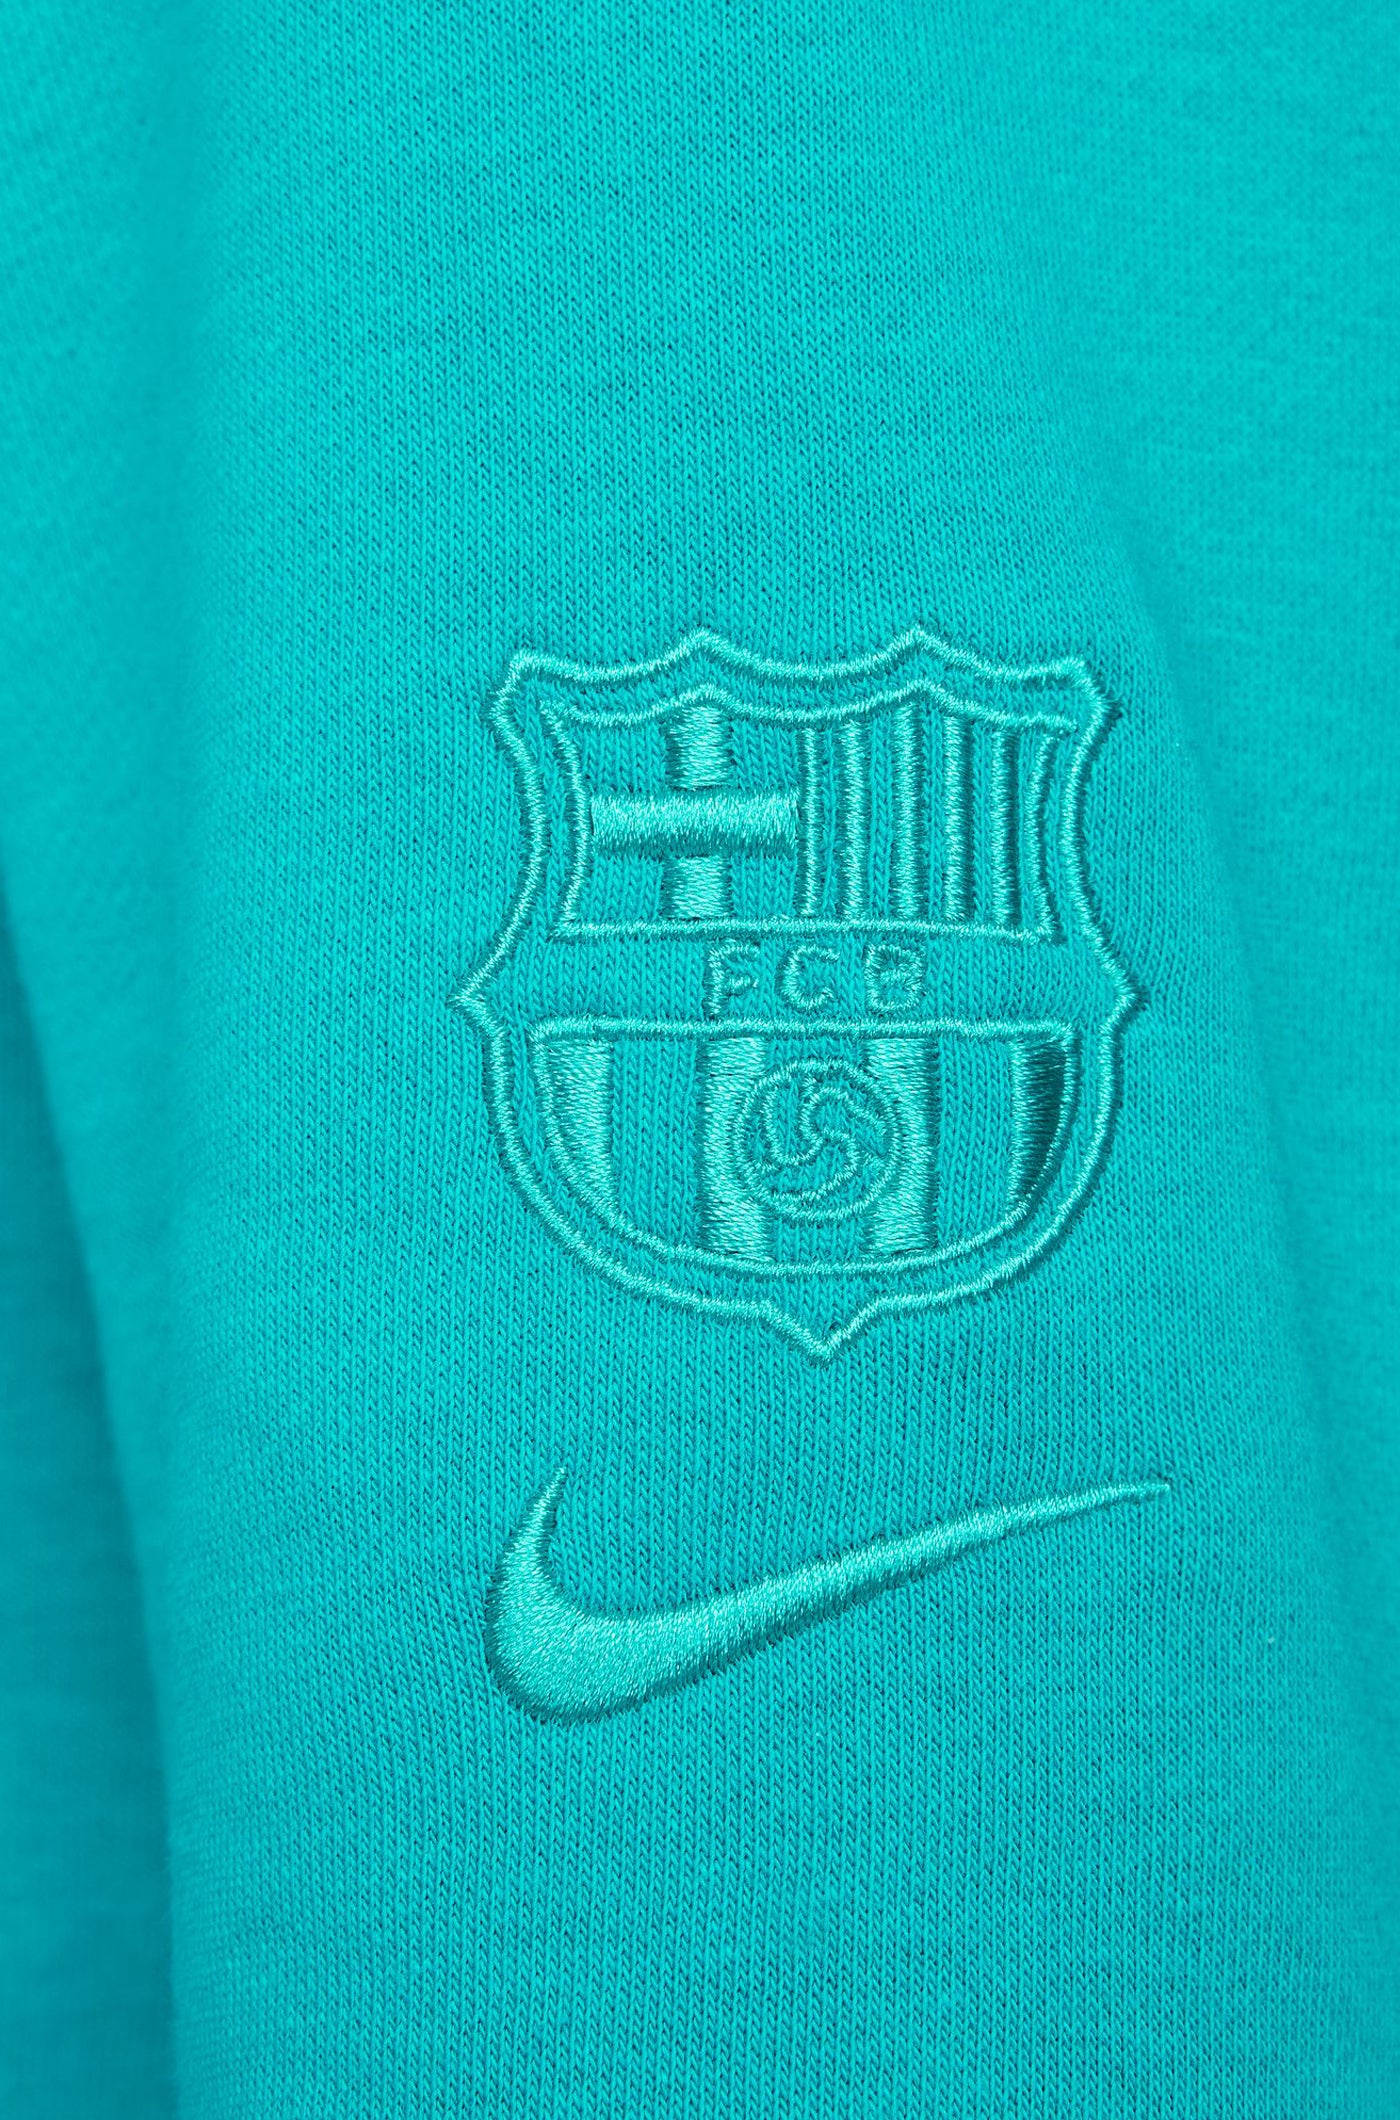 Hooded sweatshirt blue Barça Nike - Women